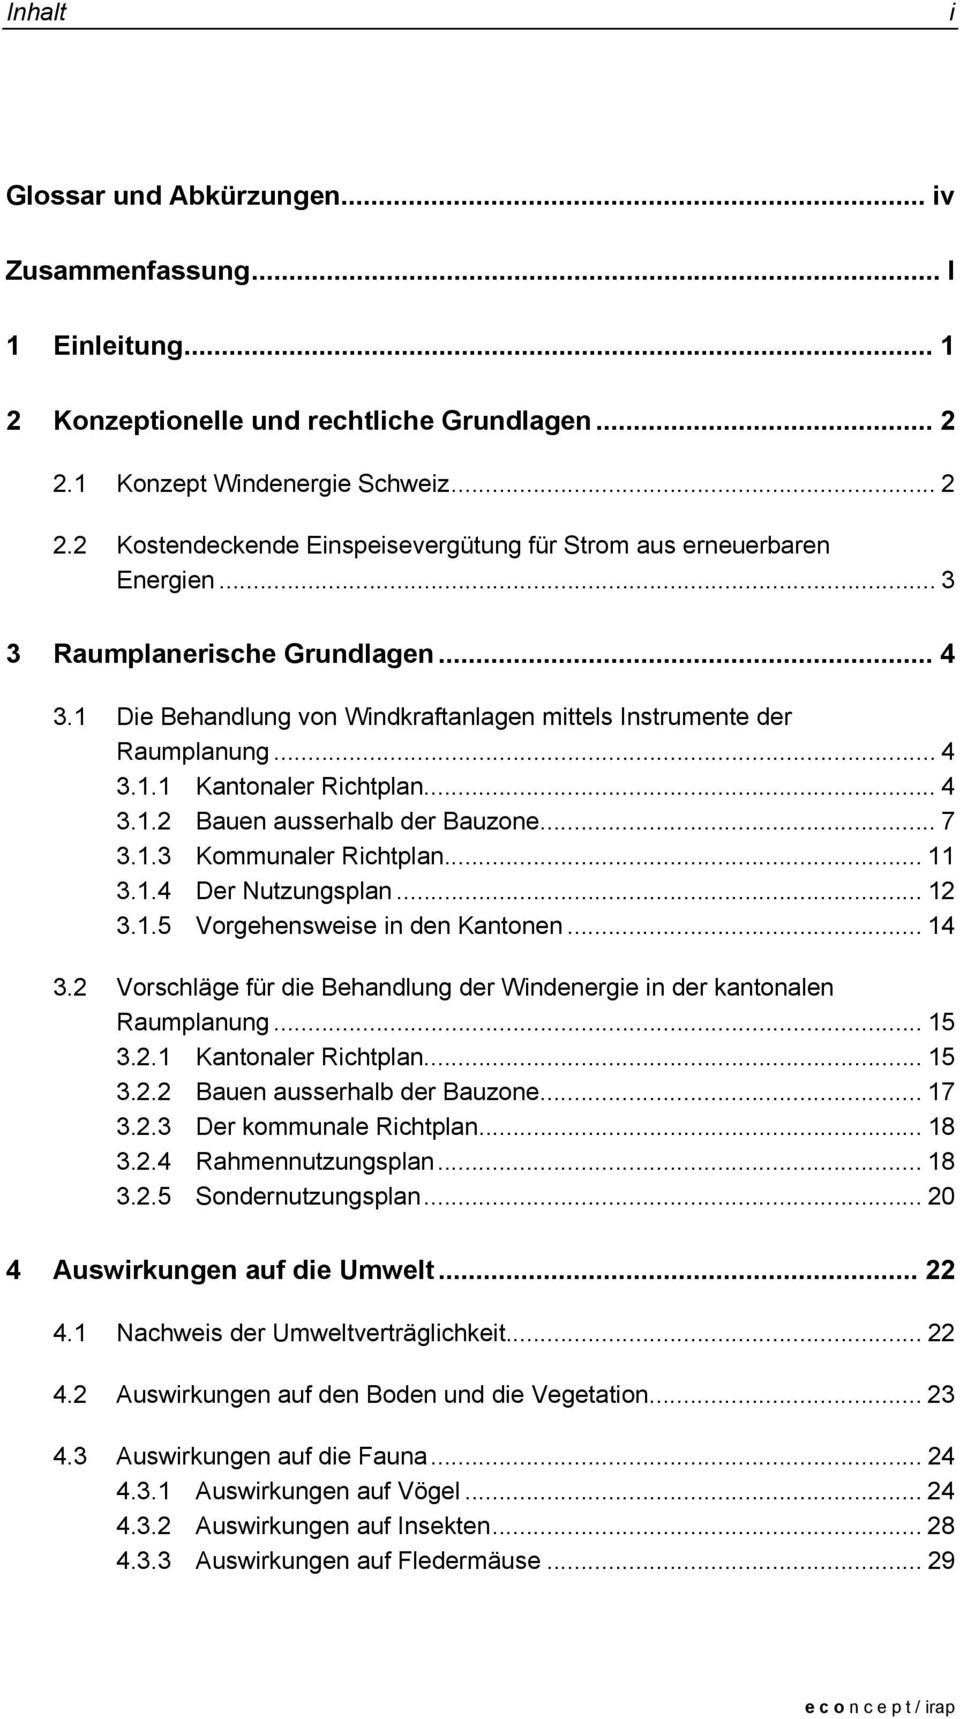 .. 11 3.1.4 Der Nutzungsplan... 12 3.1.5 Vorgehensweise in den Kantonen... 14 3.2 Vorschläge für die Behandlung der Windenergie in der kantonalen Raumplanung... 15 3.2.1 Kantonaler Richtplan... 15 3.2.2 Bauen ausserhalb der Bauzone.